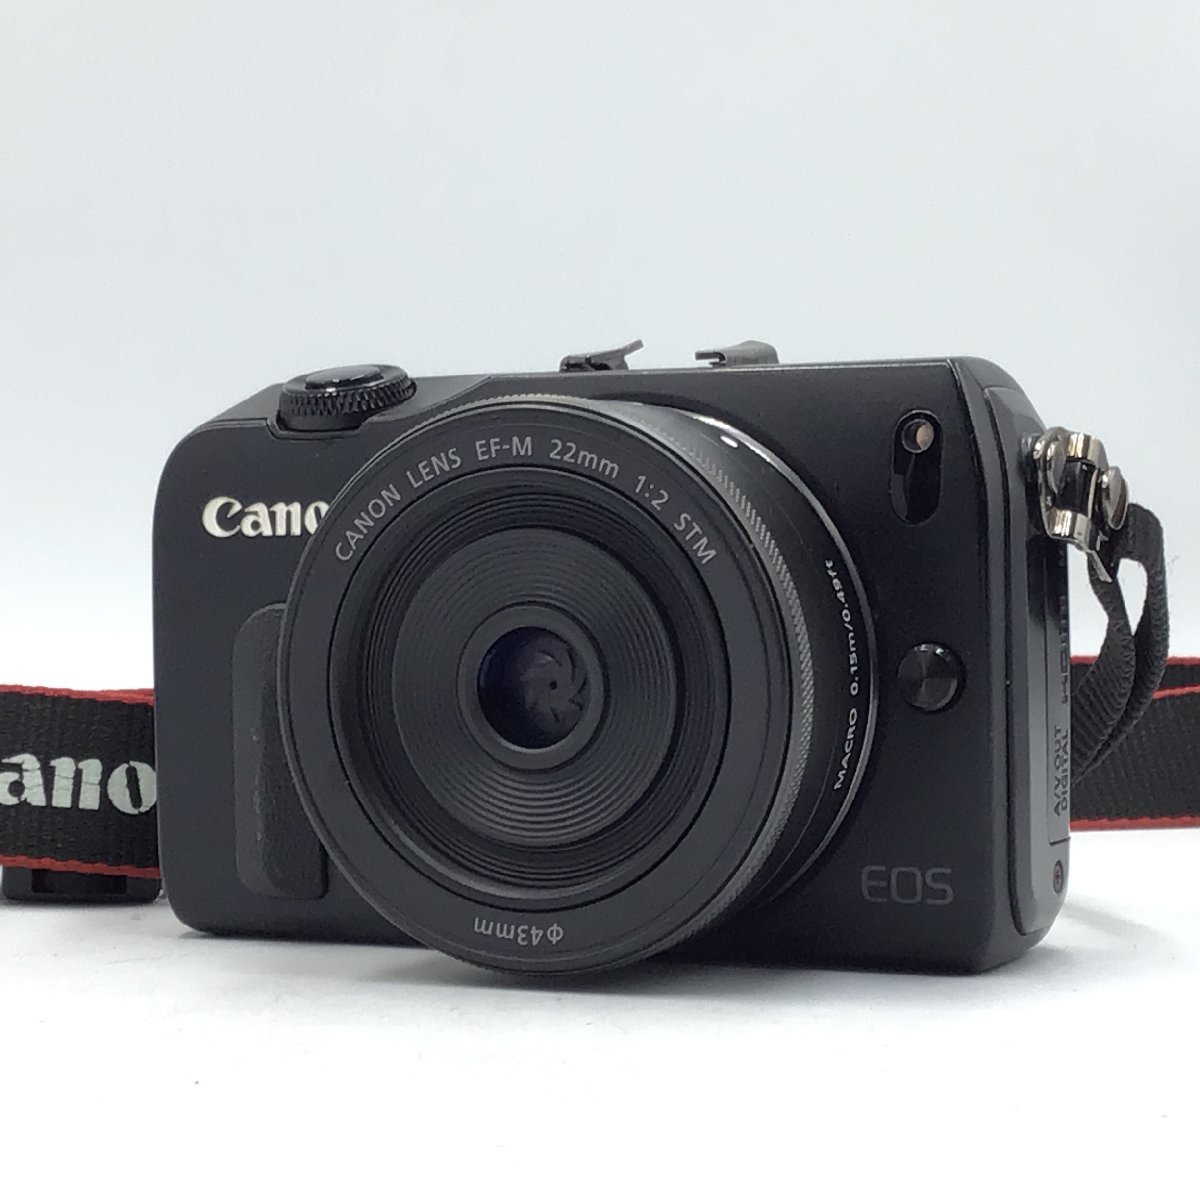 カメラ ミラーレス一眼レフ セット品 Canon EOS M / EF-M 22mm f/2 STM